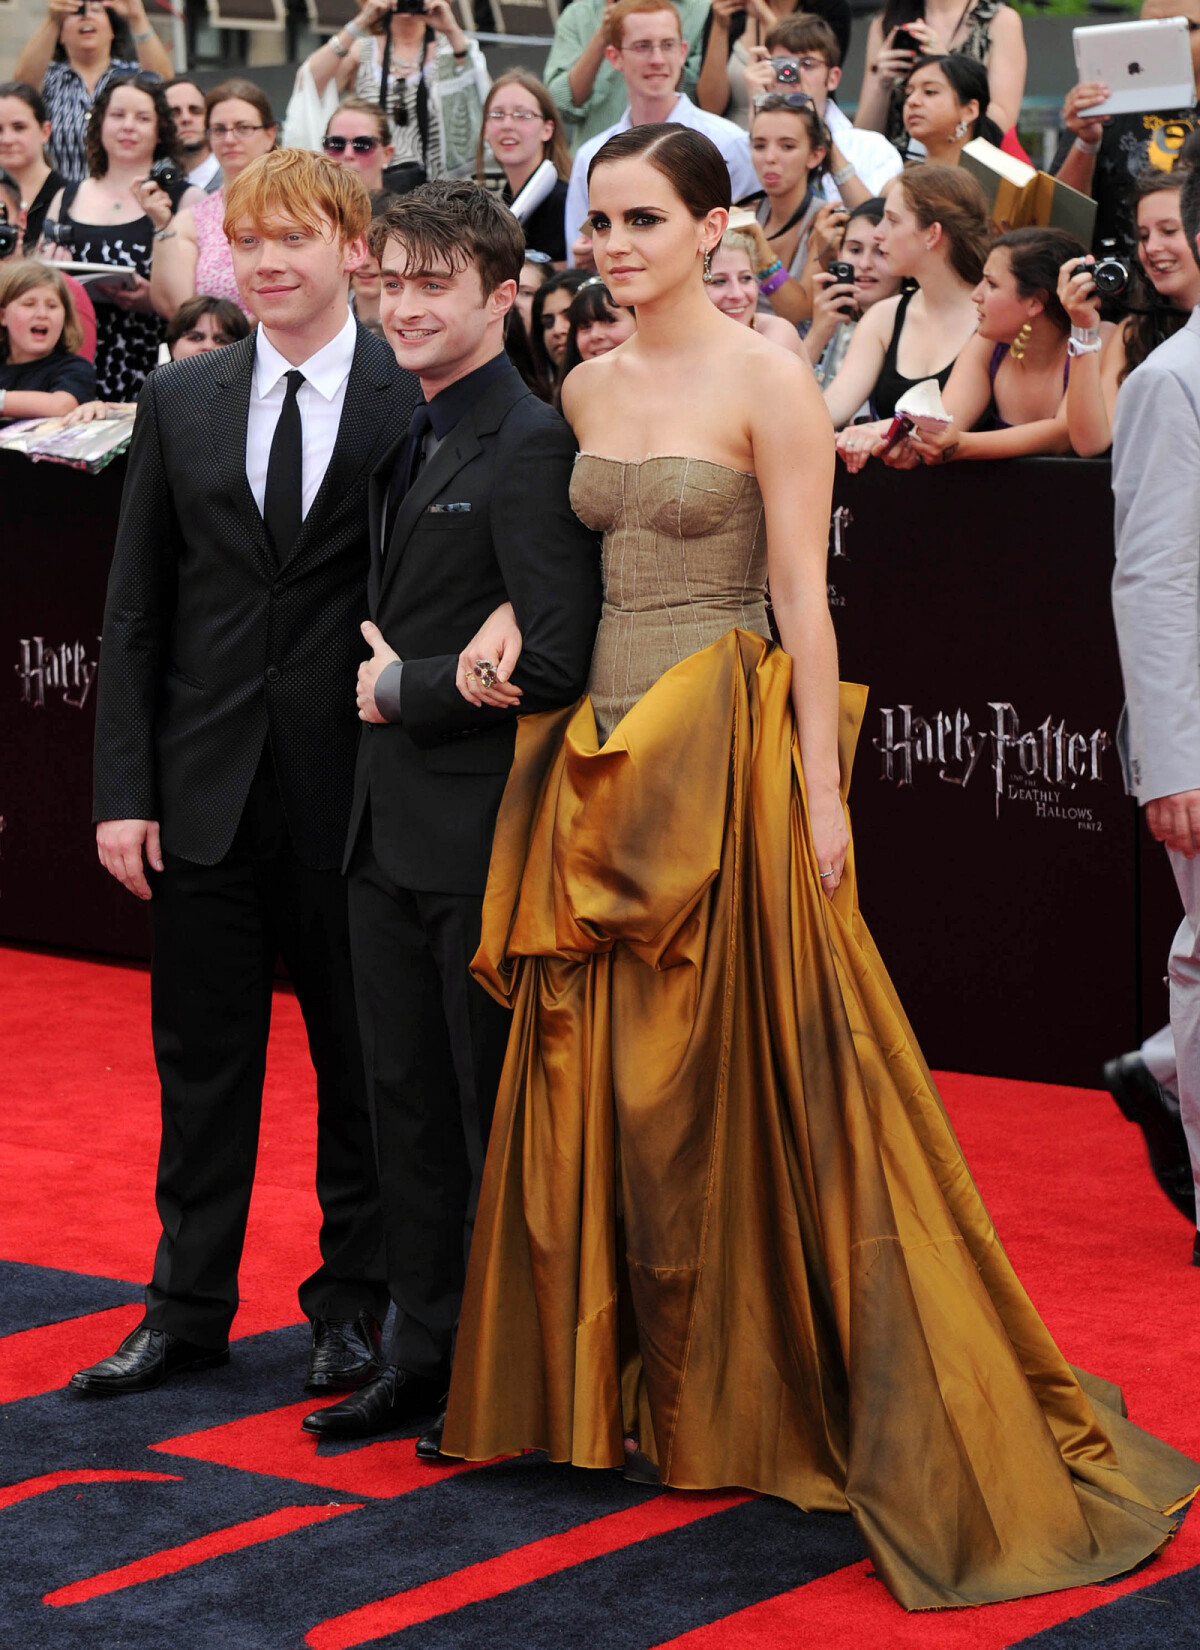 Harry Potter - Rupert Grint papa : Daniel Radcliffe réagit